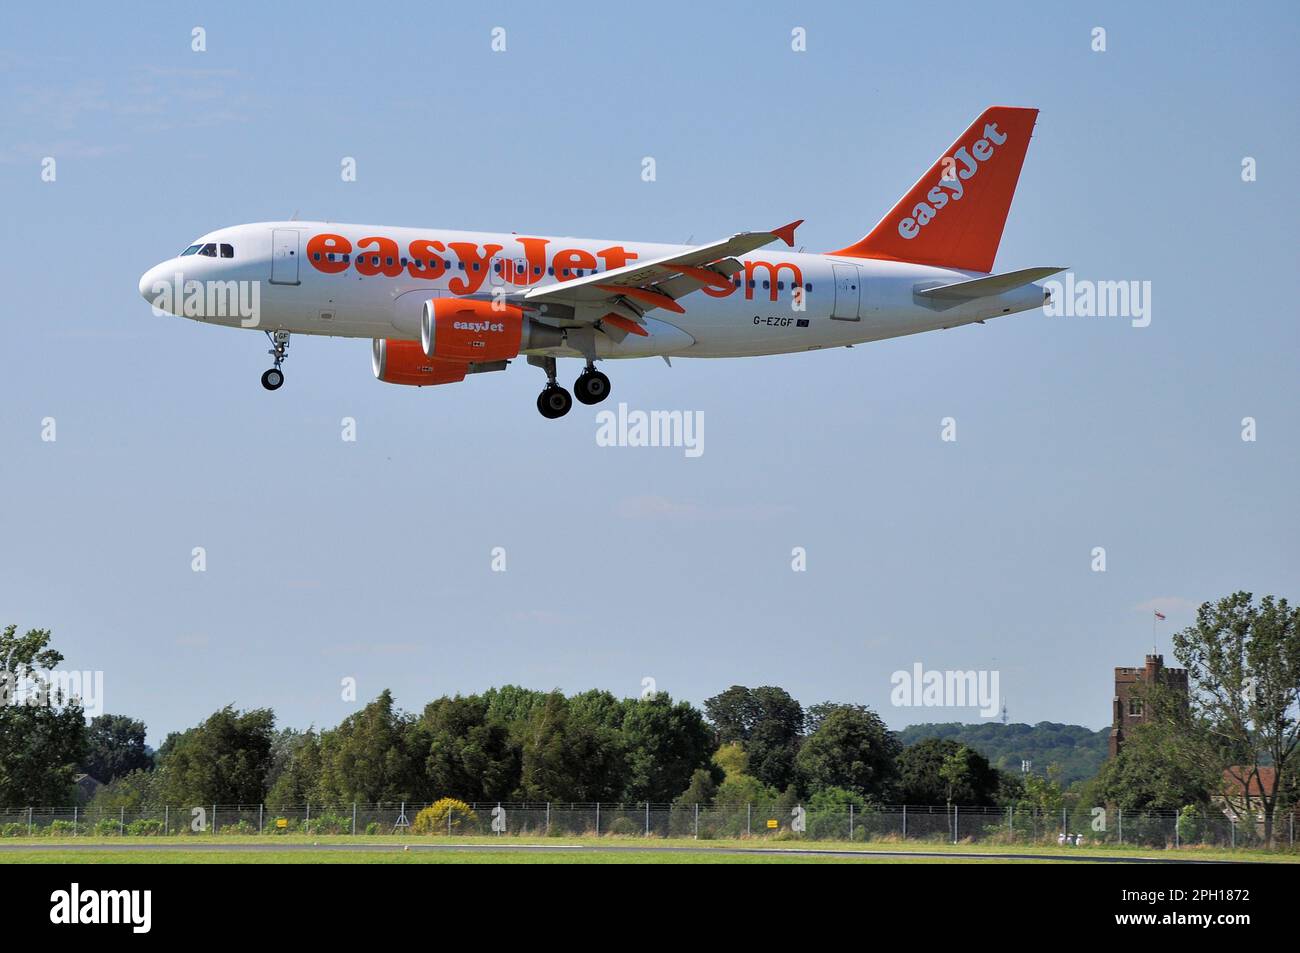 EasyJet Airbus A319 Flugzeug Düsenflugzeug G-EZGF auf dem Finale zur Landung am Flughafen London Southend kurz nachdem easyJet den Flughafen als Basis genutzt hat Stockfoto